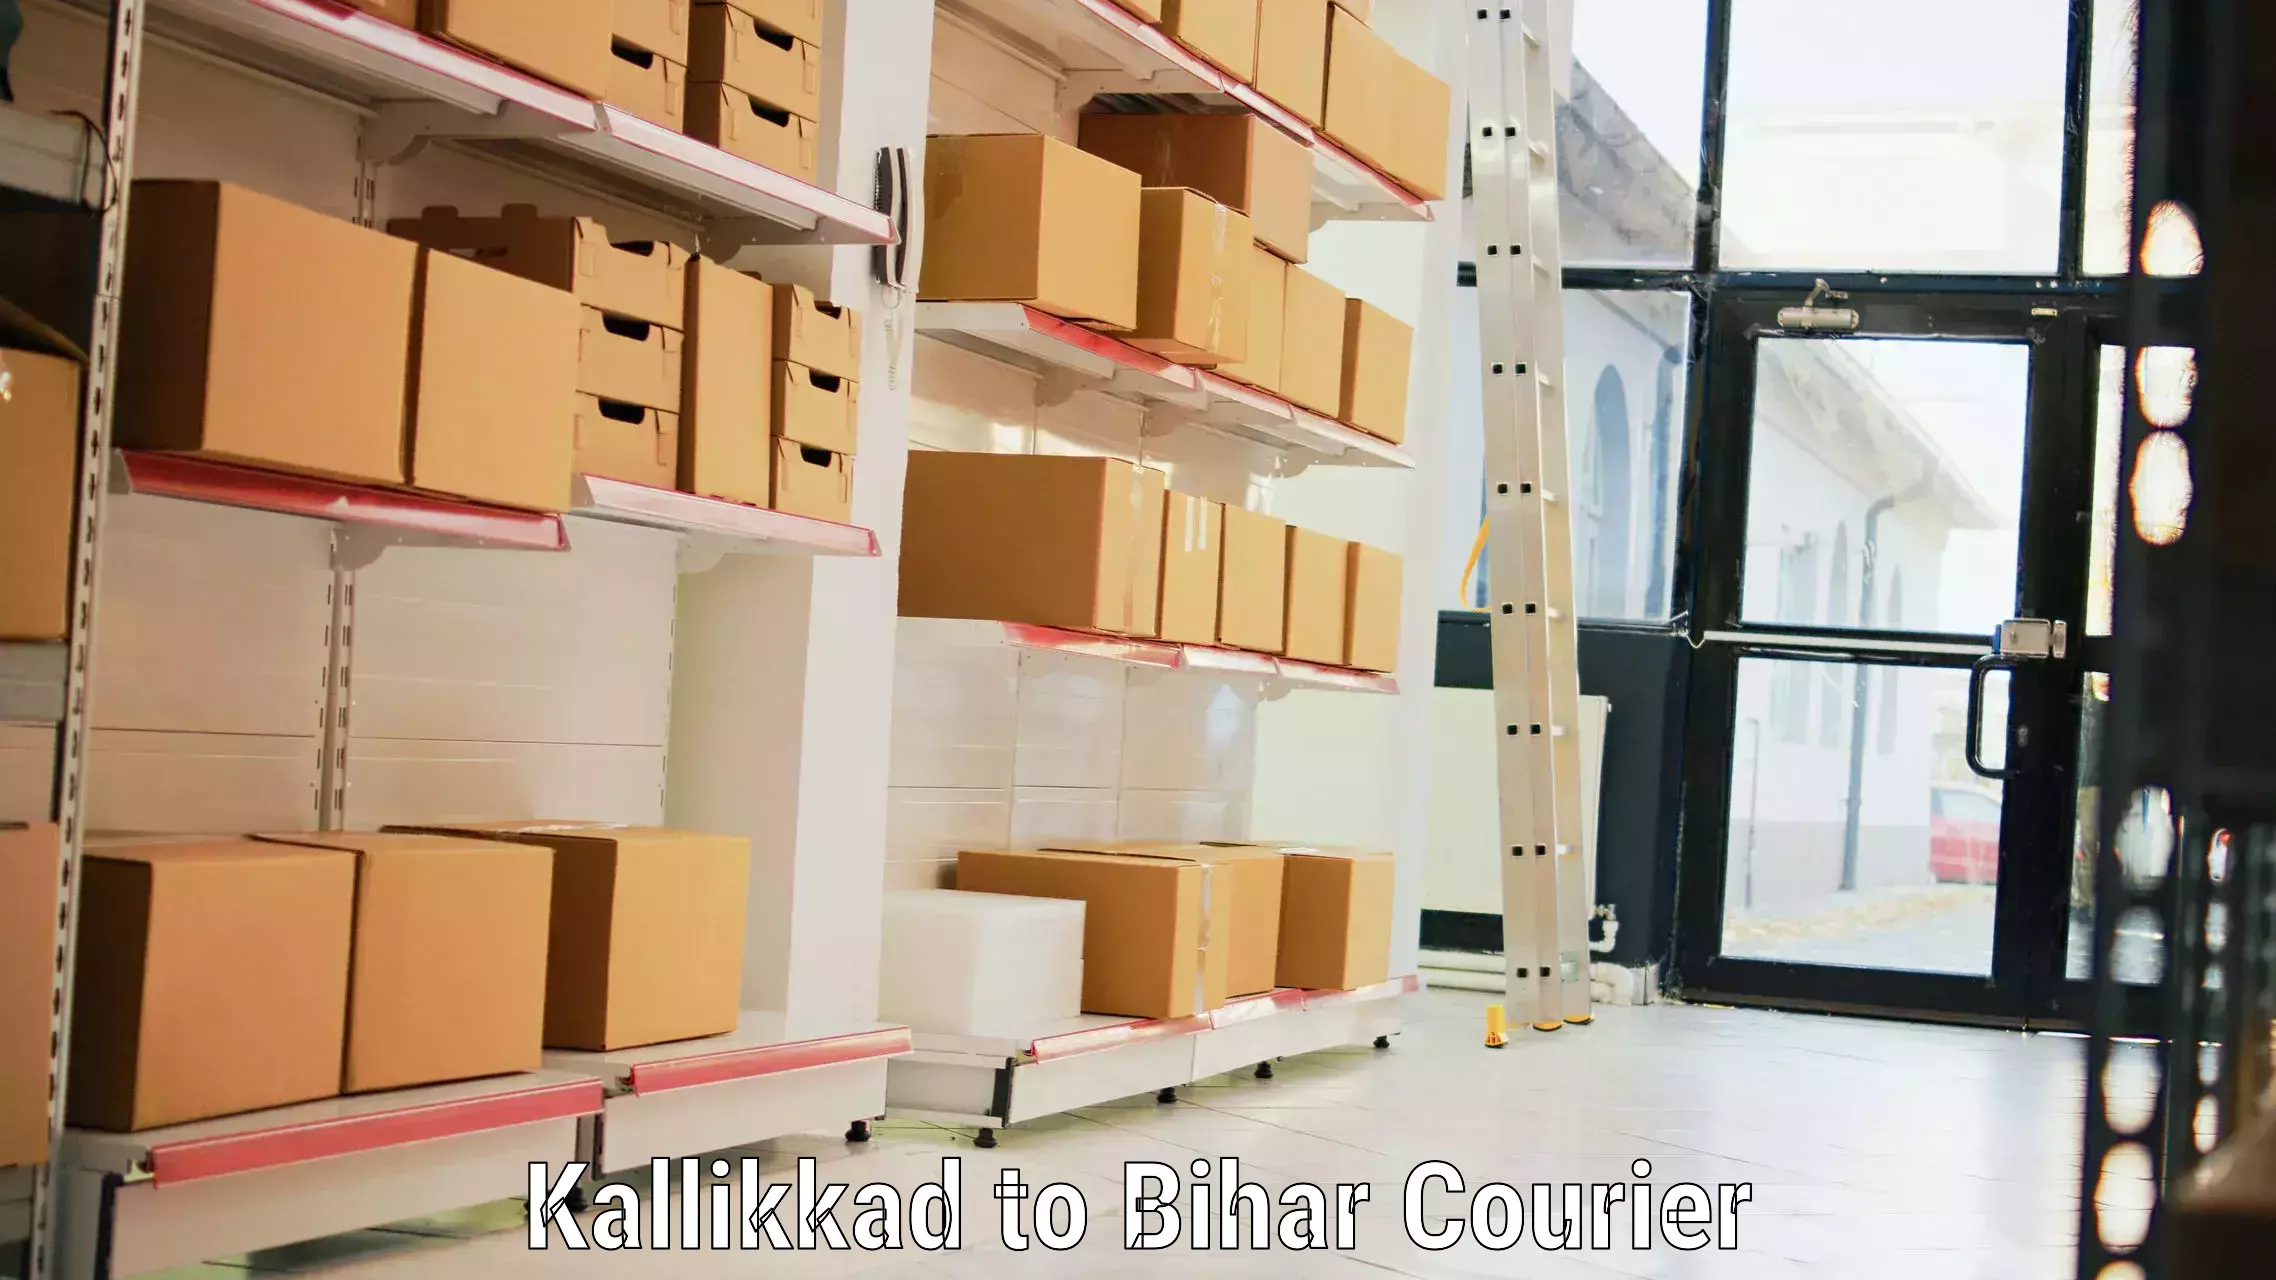 Urgent luggage shipment Kallikkad to Bihar